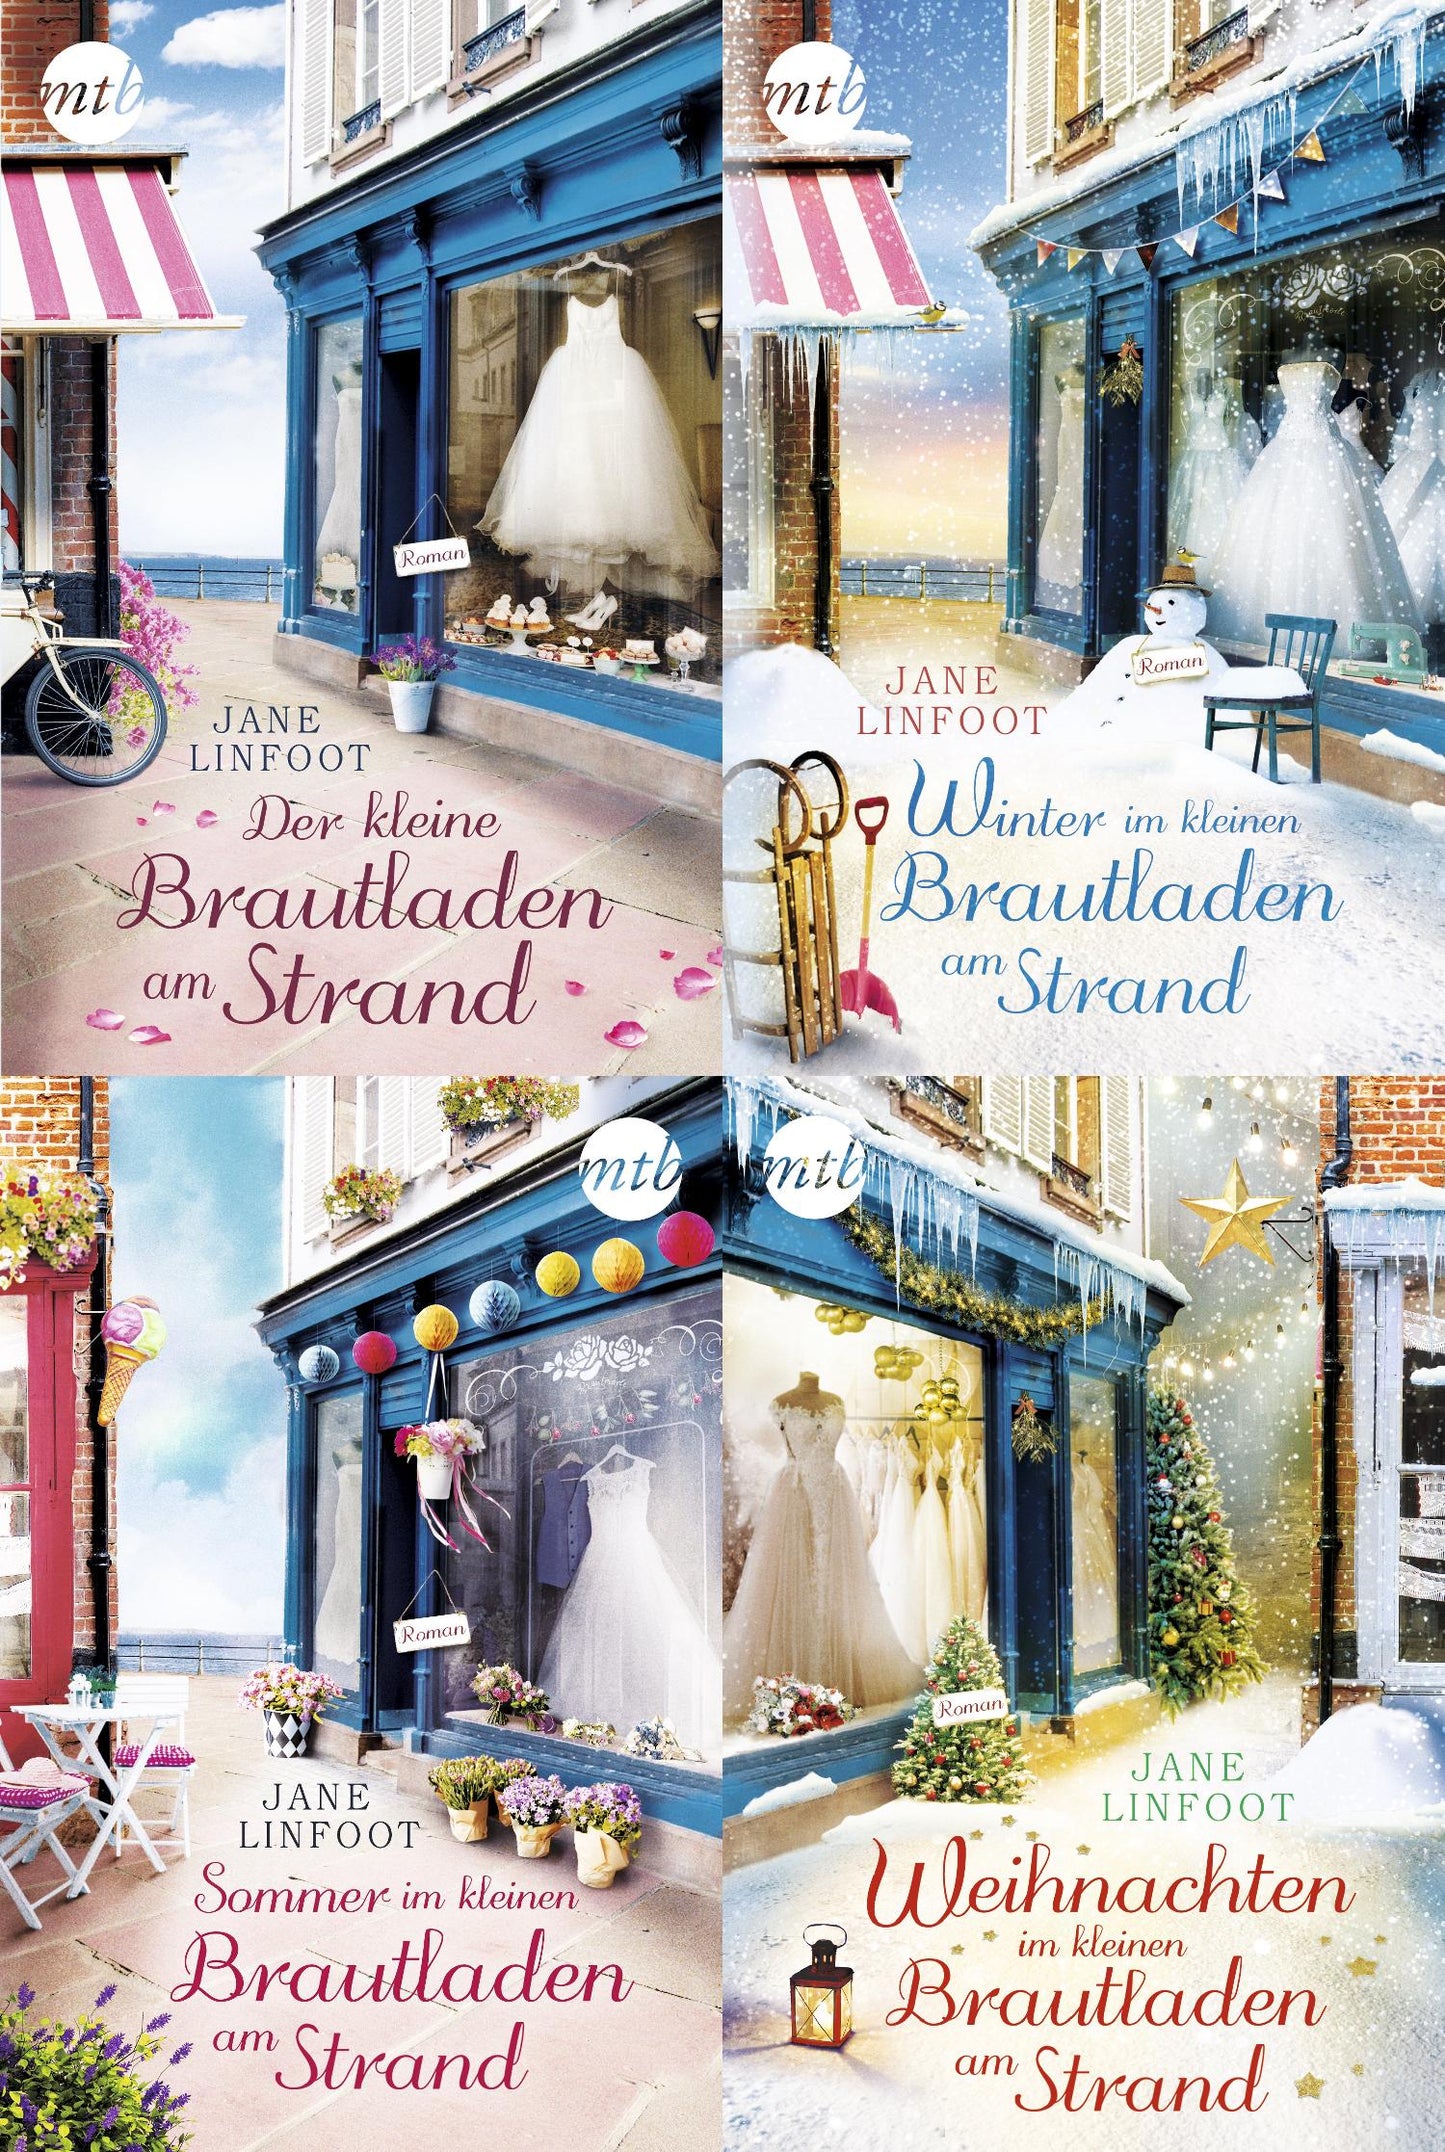 Die Wedding-Shop-Reihe Band 1-4 plus 1 exklusives Postkartenset